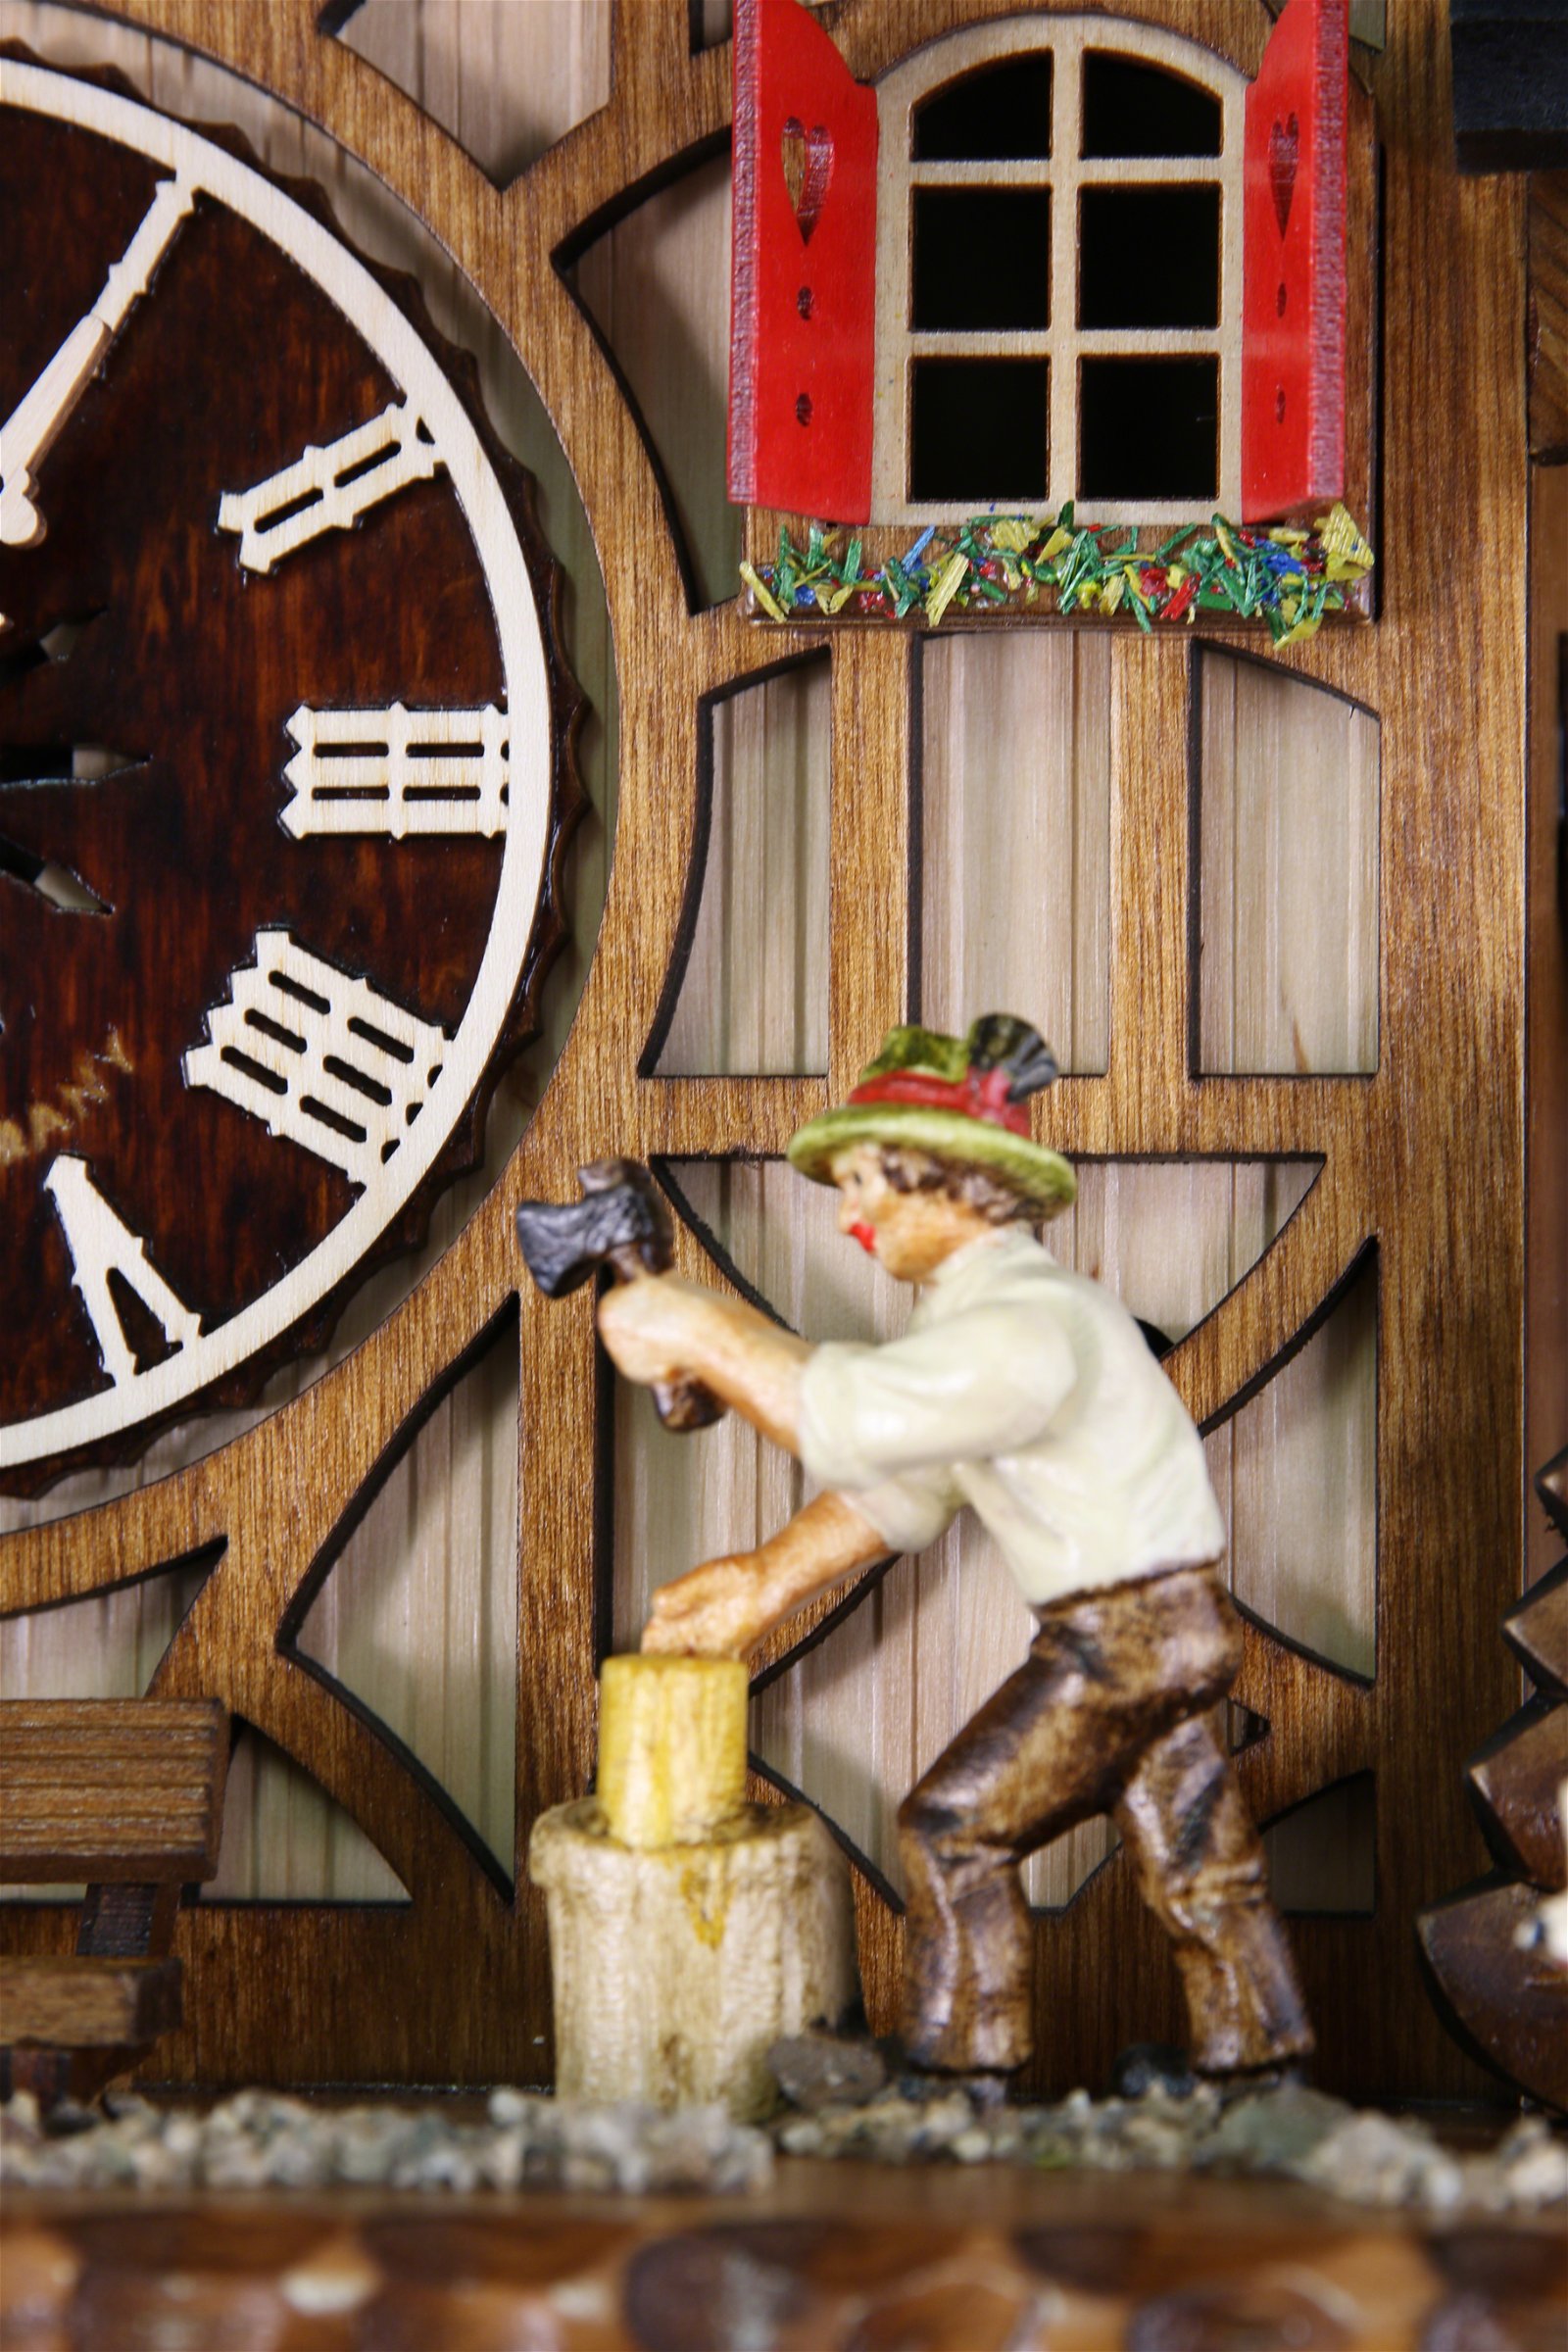 Kuckucksuhr Quarz-Uhrwerk Chalet-Stil 44cm von Engstler